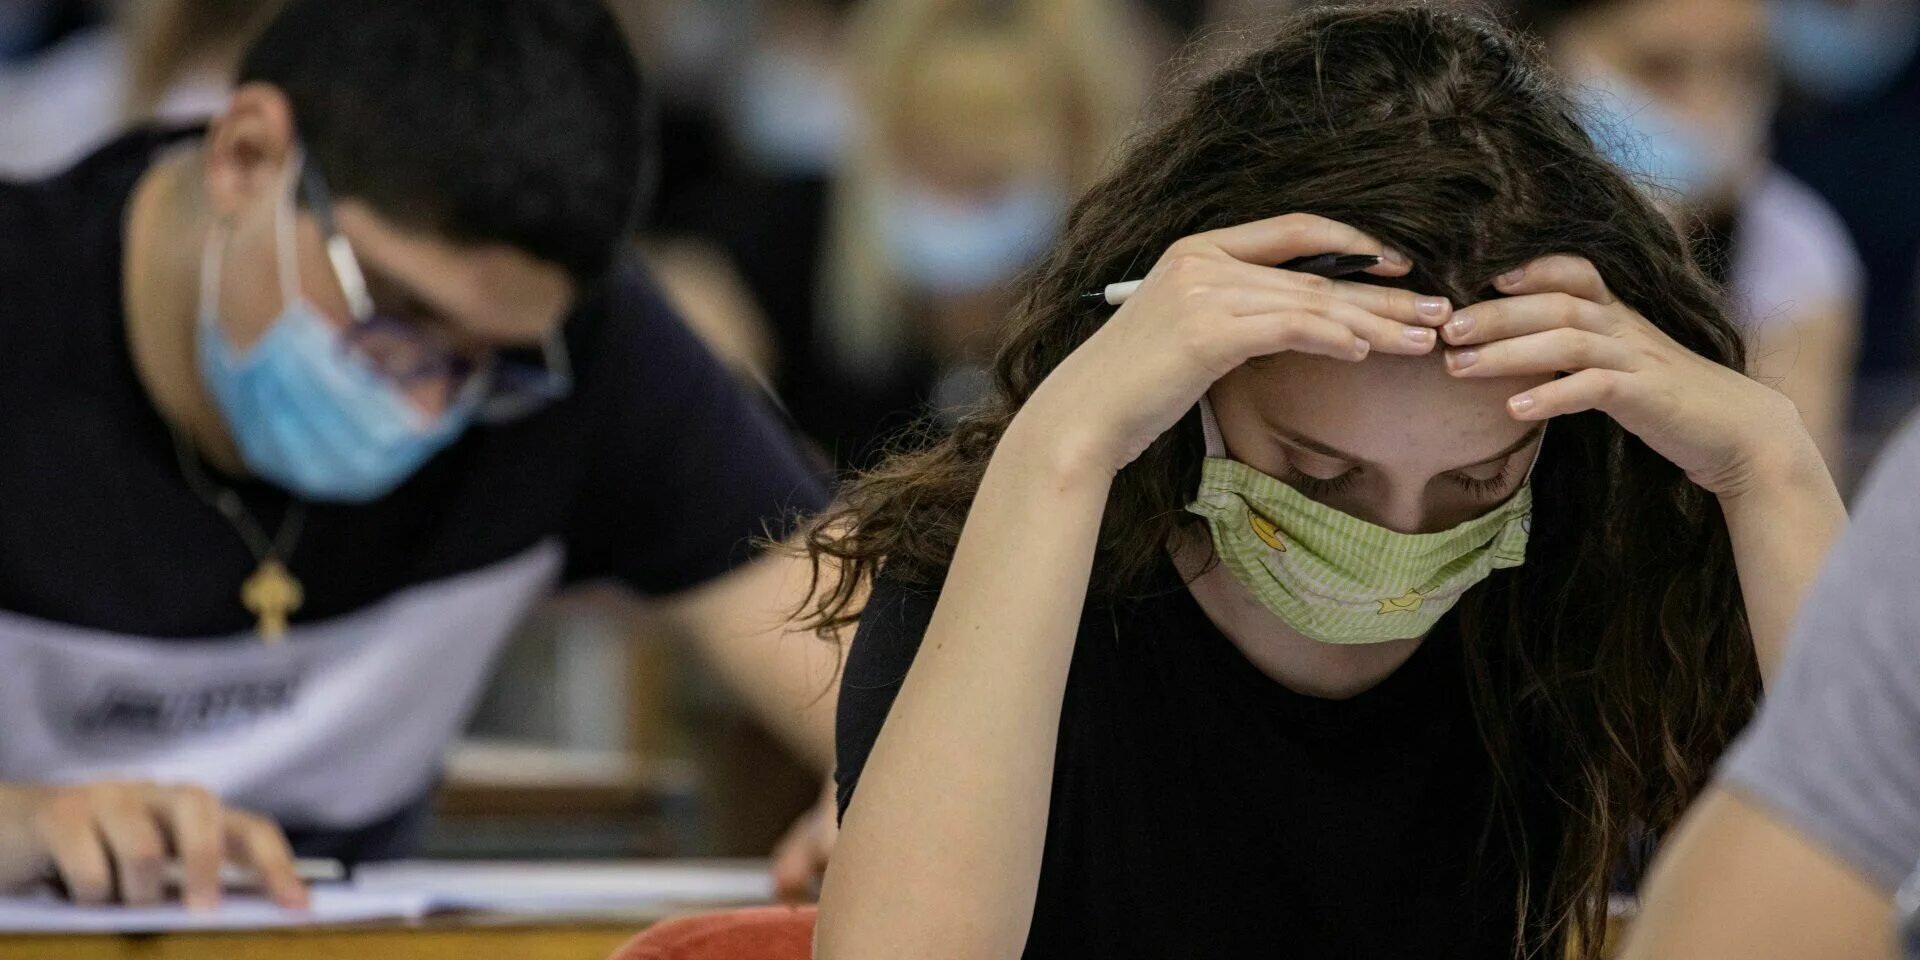 Проблемы студентов в университете. Студенты в вузе в масках. Вузы в пандемию. Пандемия и образование. Студенты в аудитории.